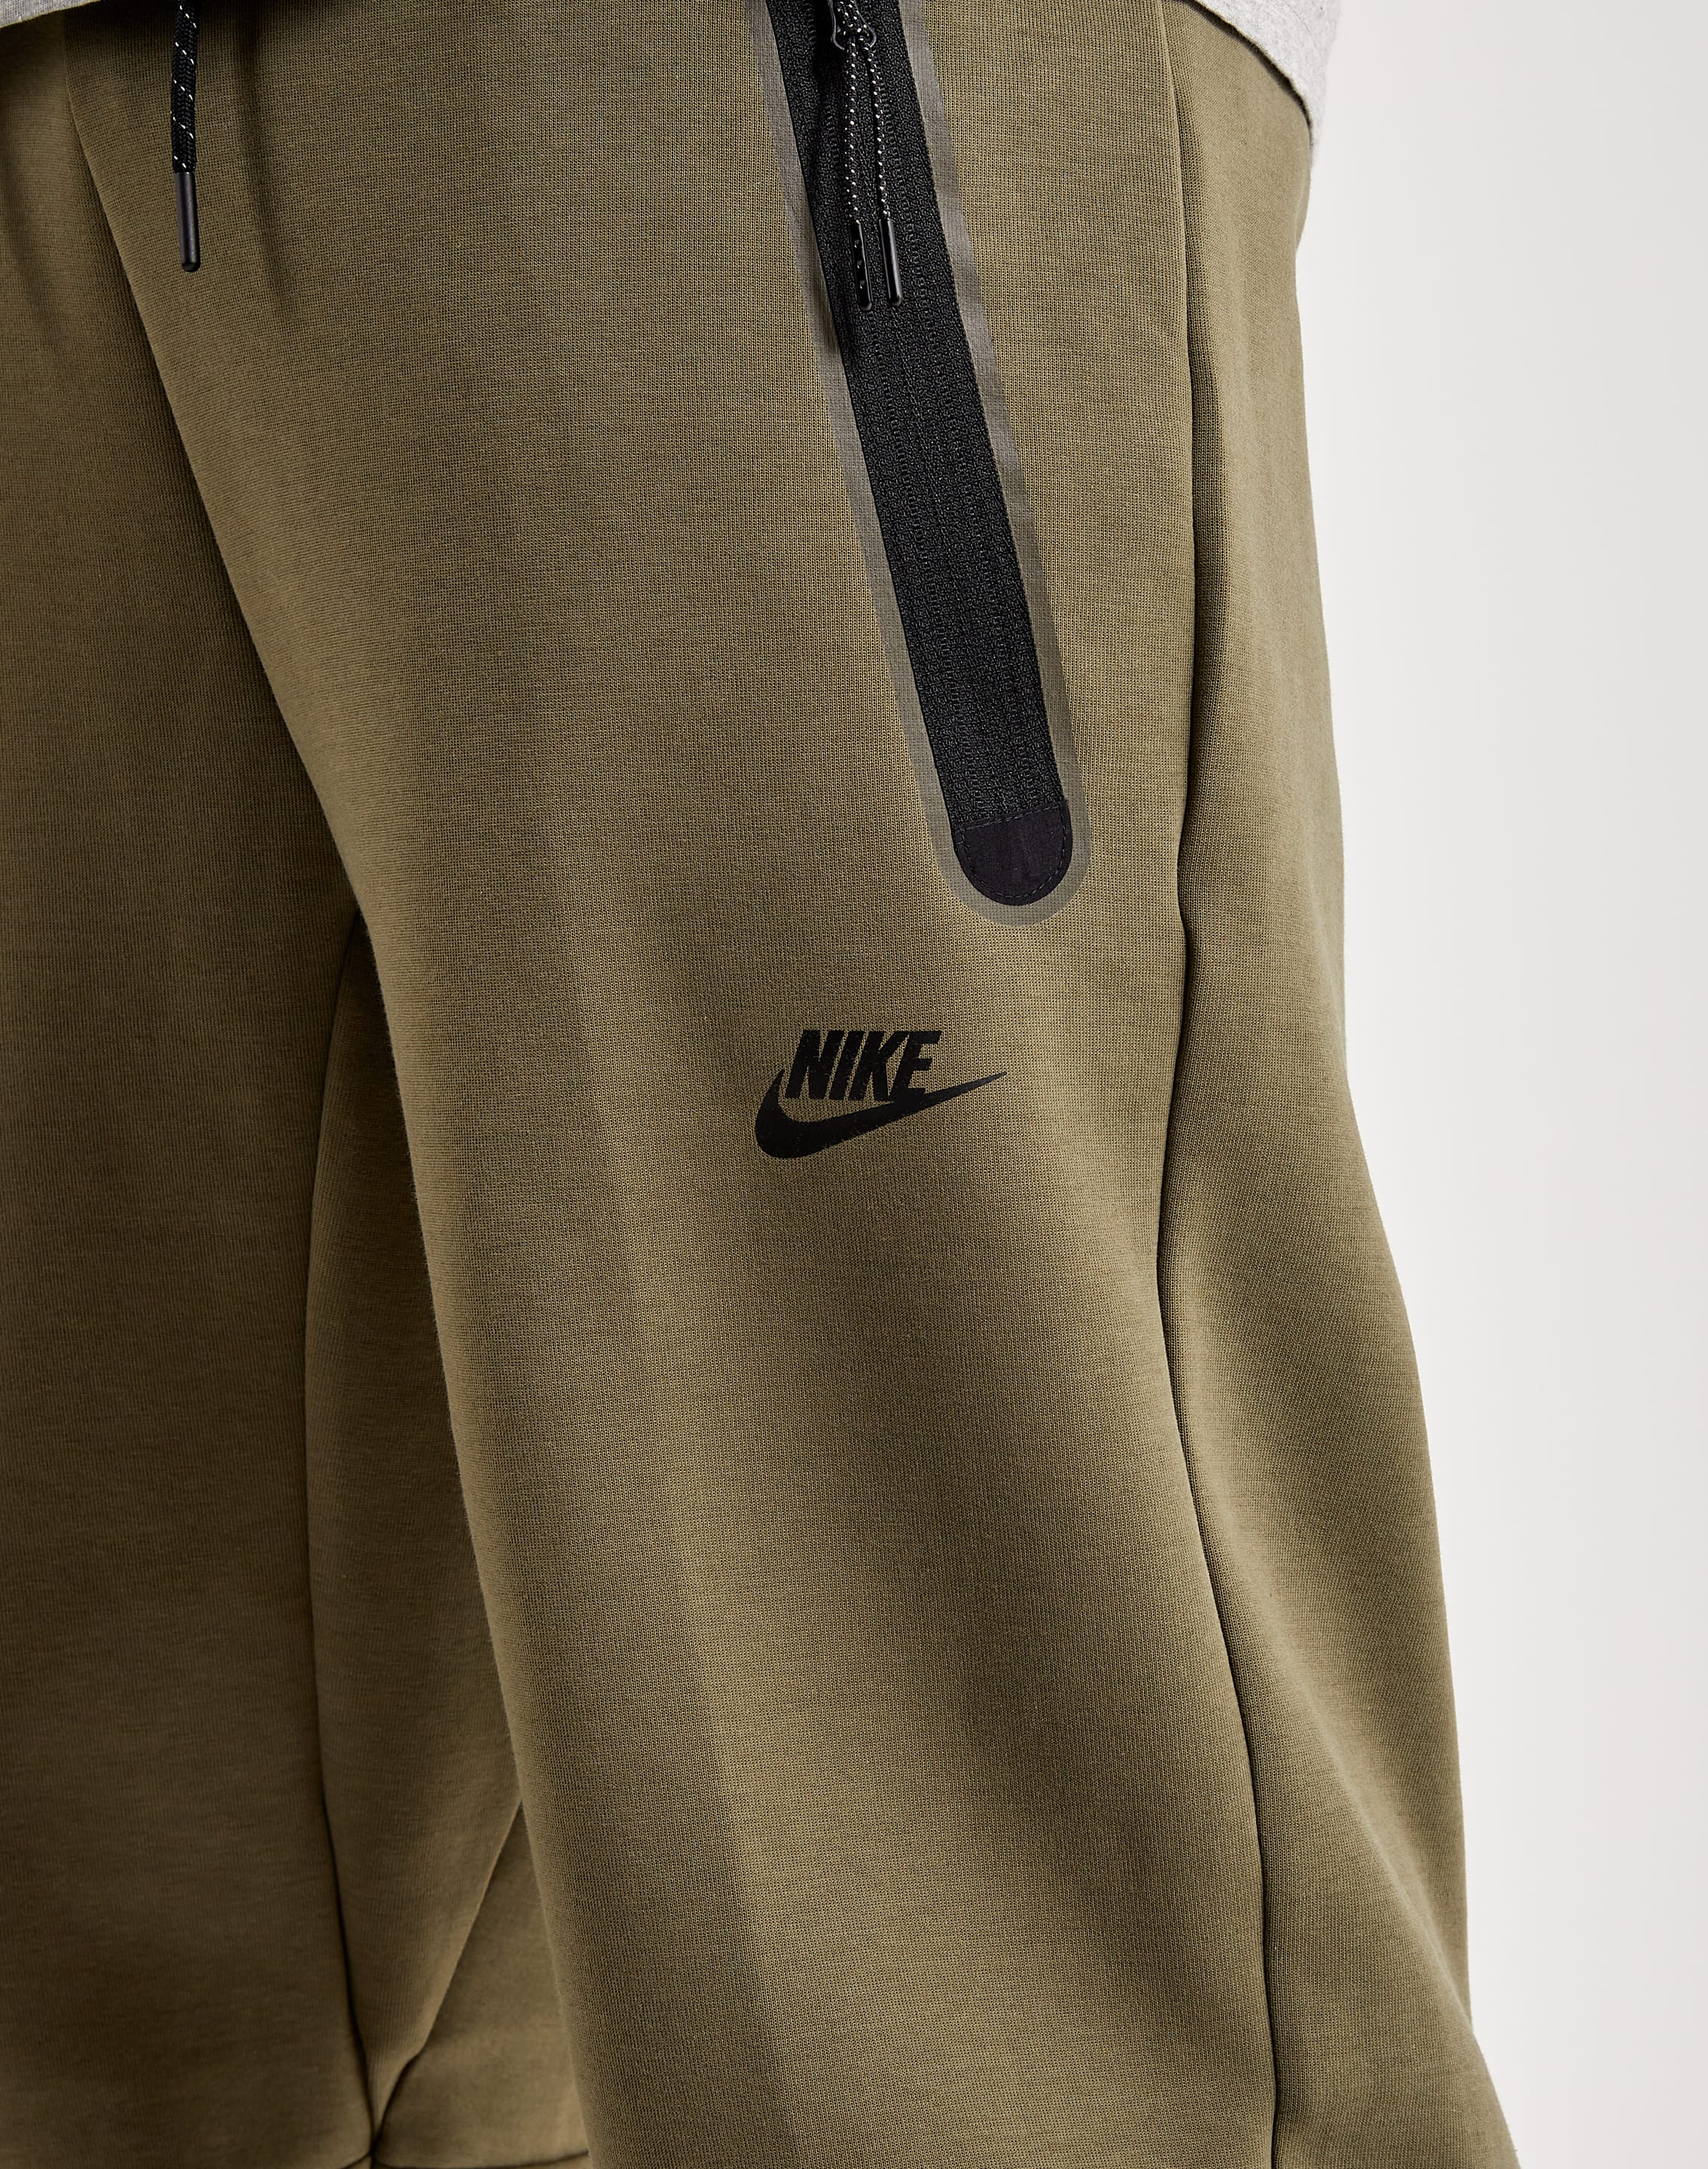 Nike Sportswear Tech Fleece Pant Olive Green